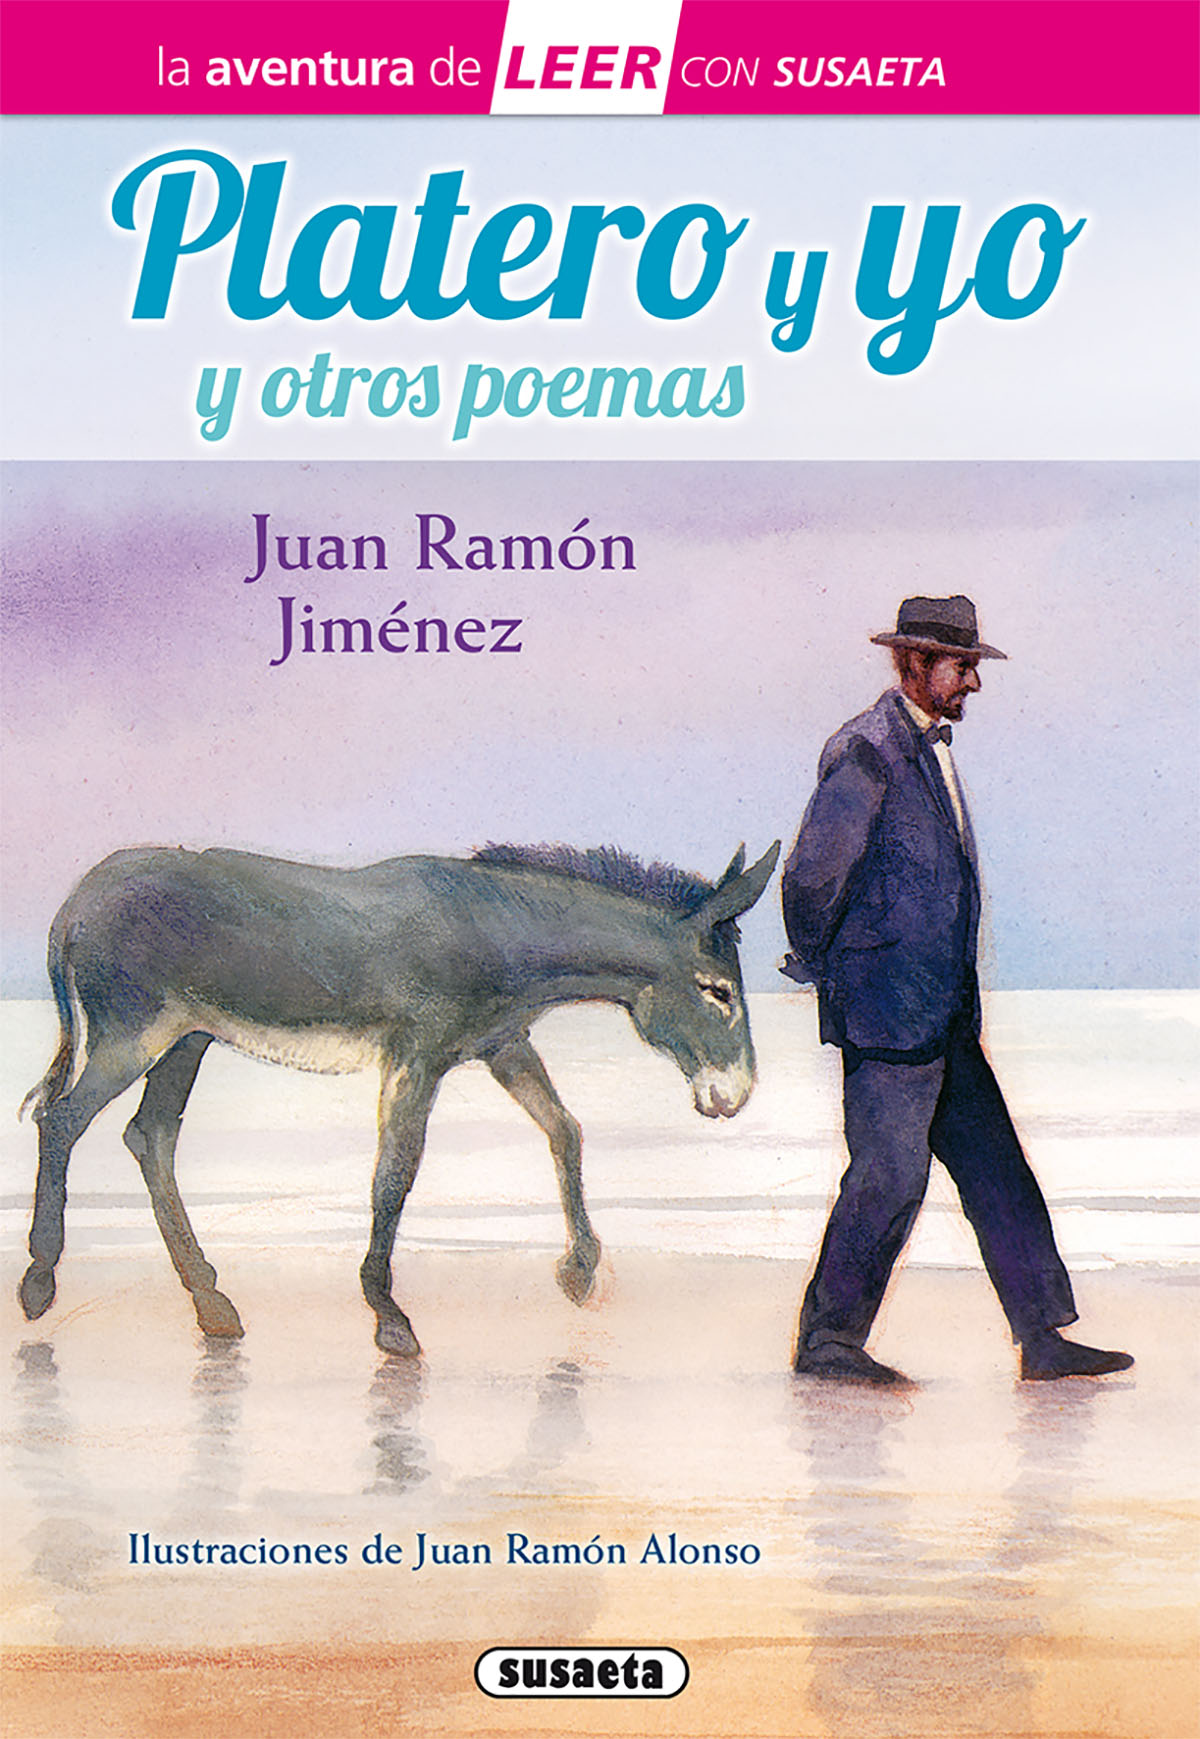 Platero y yo y poemas de Juan Ramón Jiménez